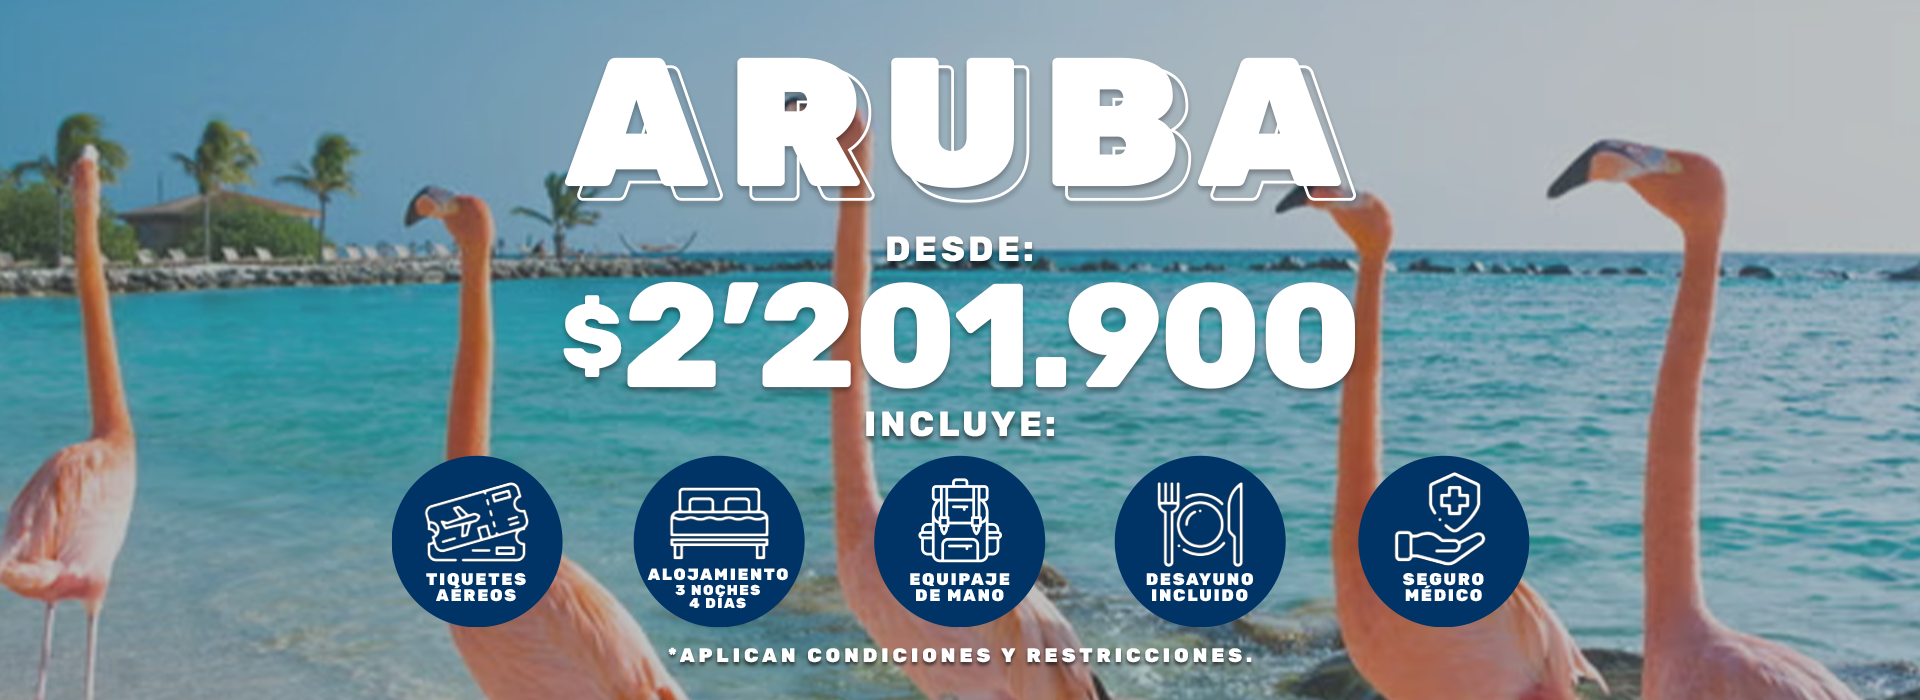 Paquete a Aruba: Vuelo + Hotel